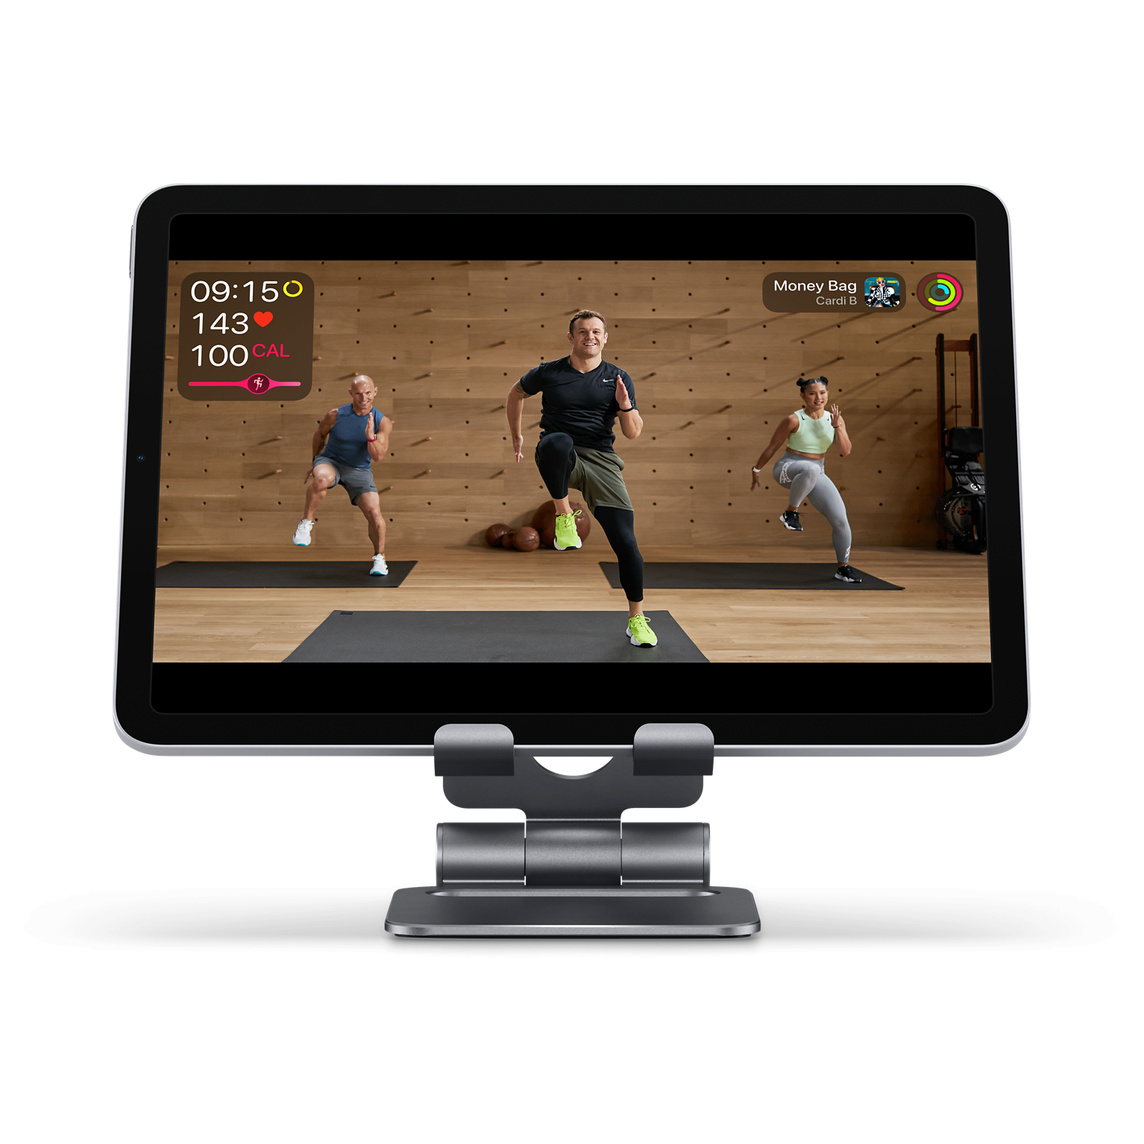 Il supporto pieghevole in alluminio Satechi sostiene il tuo iPhone o iPad mentre segui un allenamento o videochiami con FaceTime.